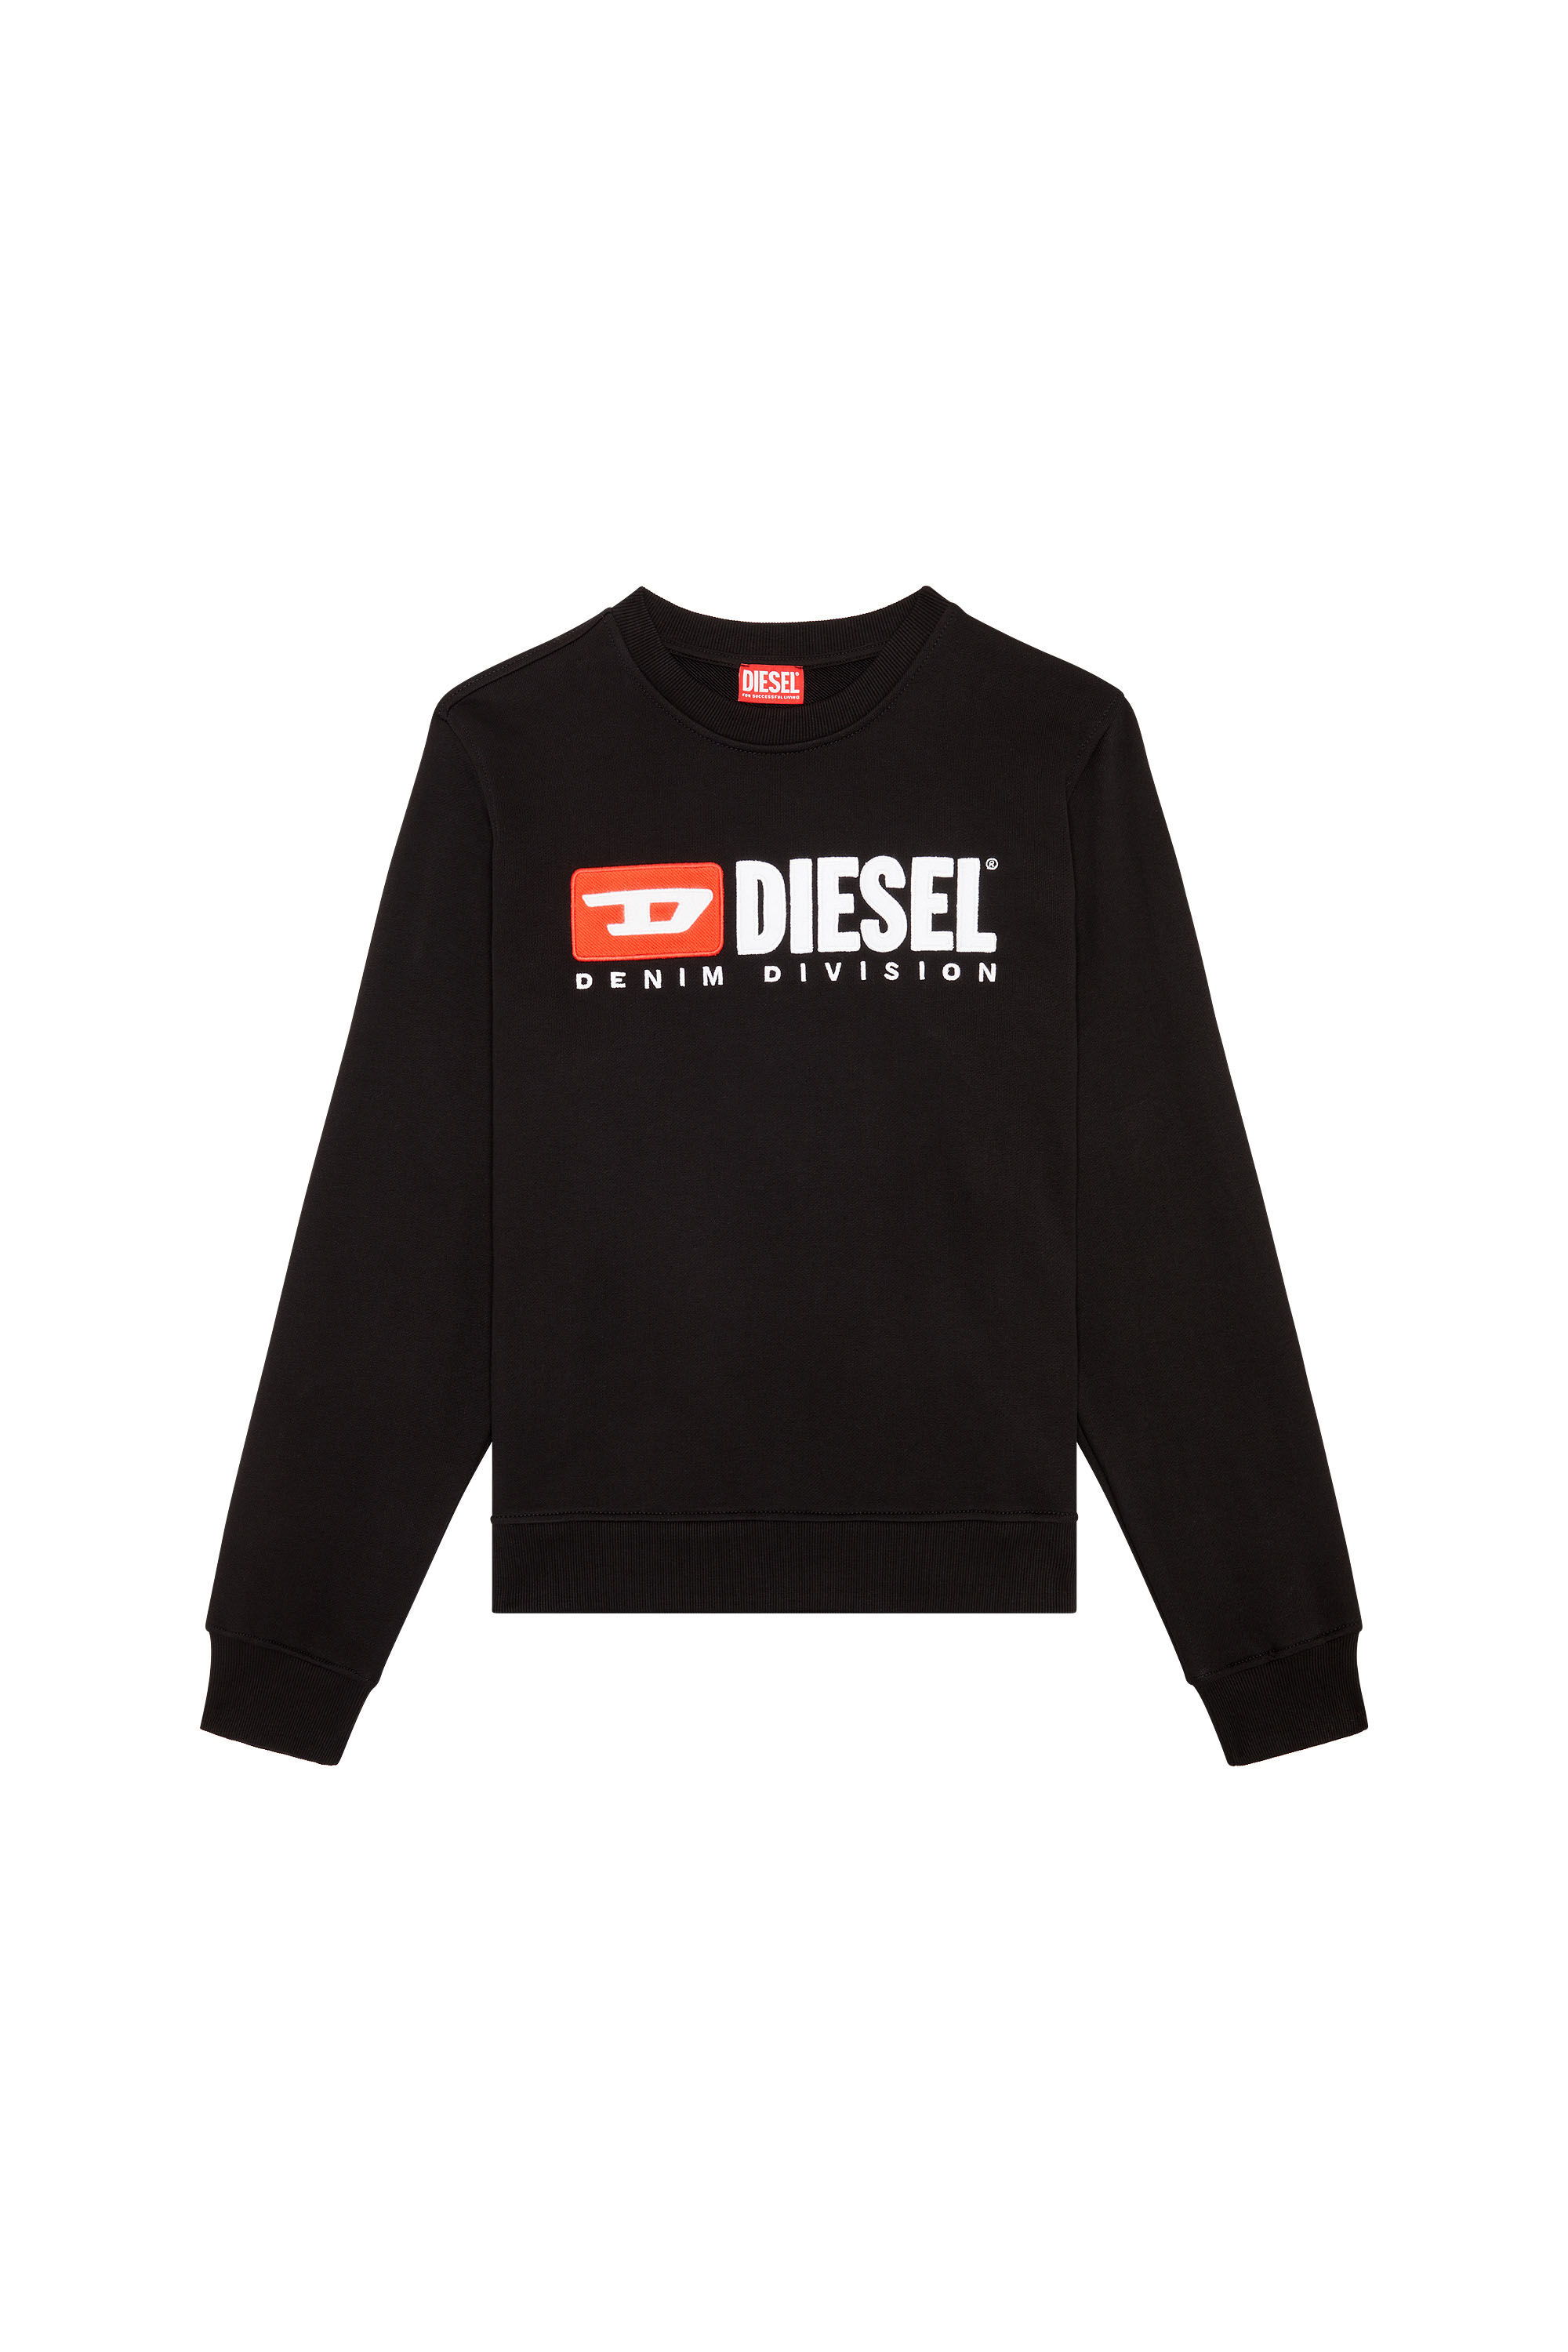 Diesel - S-GINN-DIV, Noir - Image 2